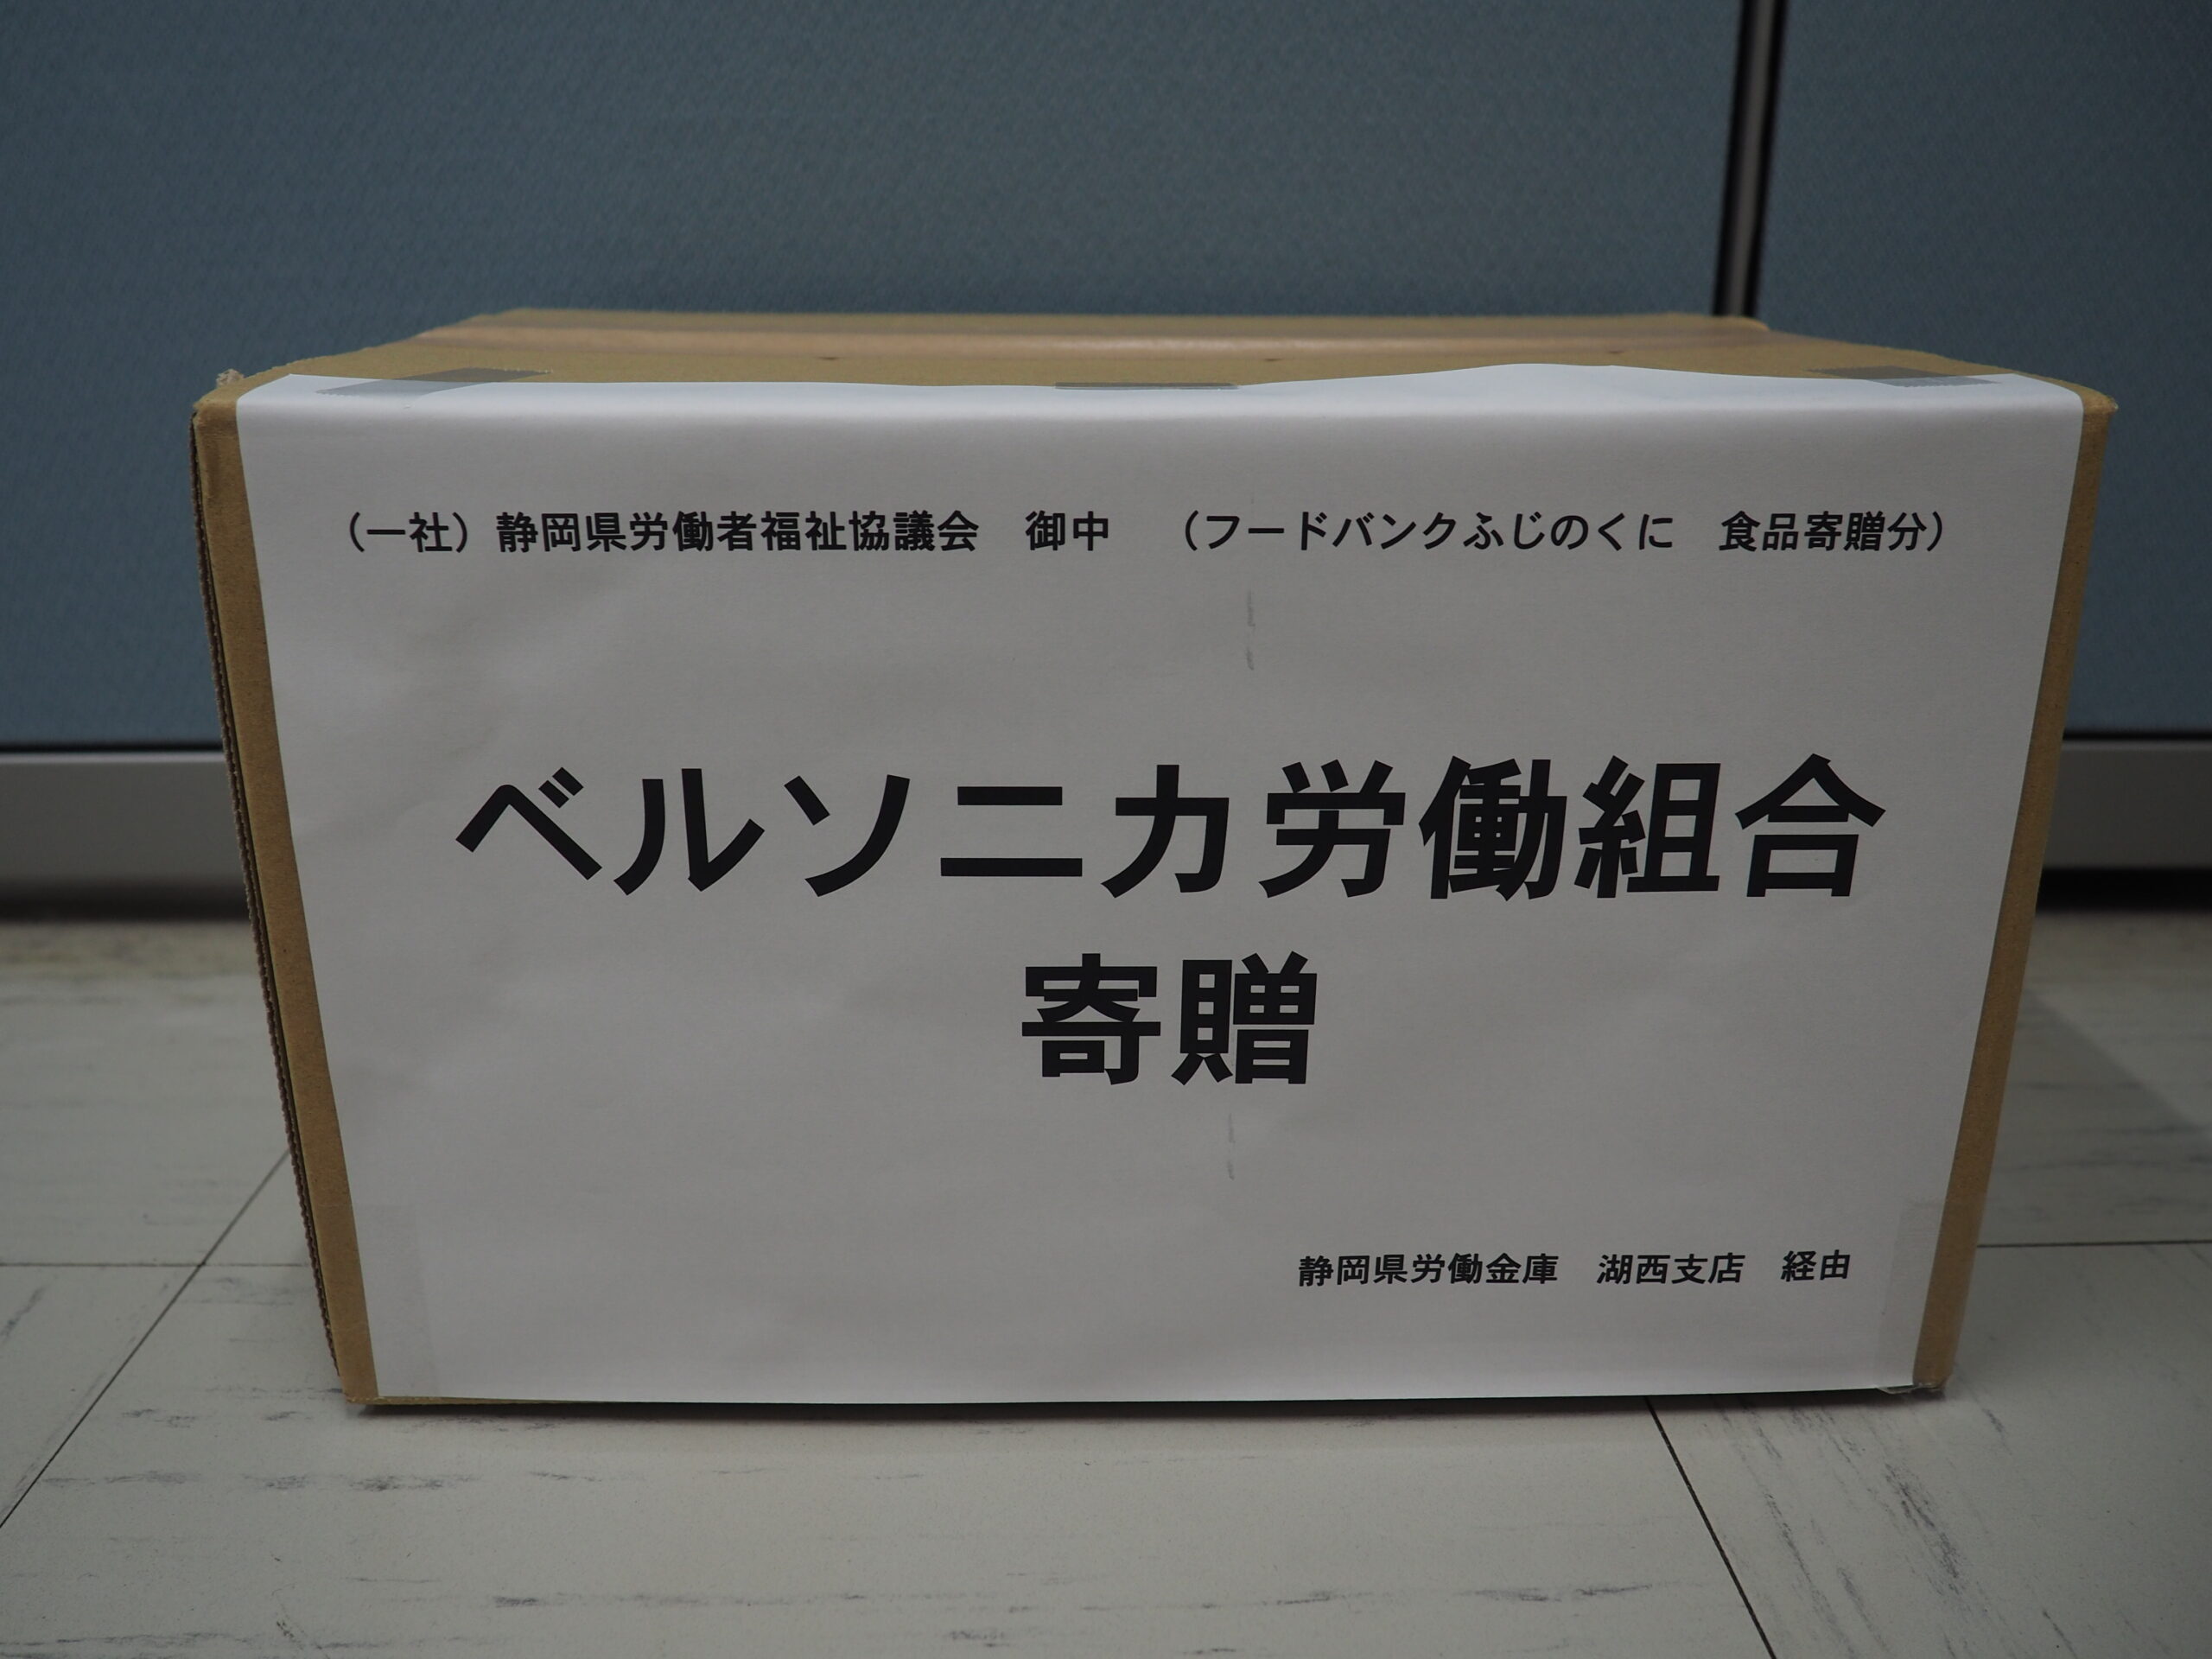 ベルソニカ労働組合様・静岡県労働金庫労働組合様から食品を提供いただきました。